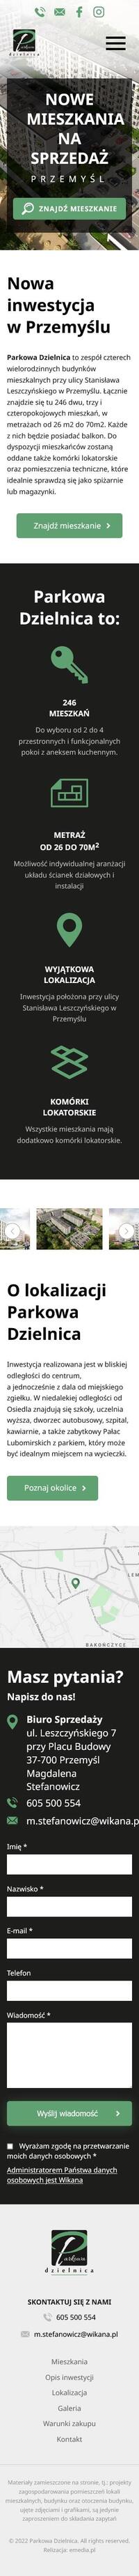 Strona internetowa parkowadzielnica.pl - zrzut mobile